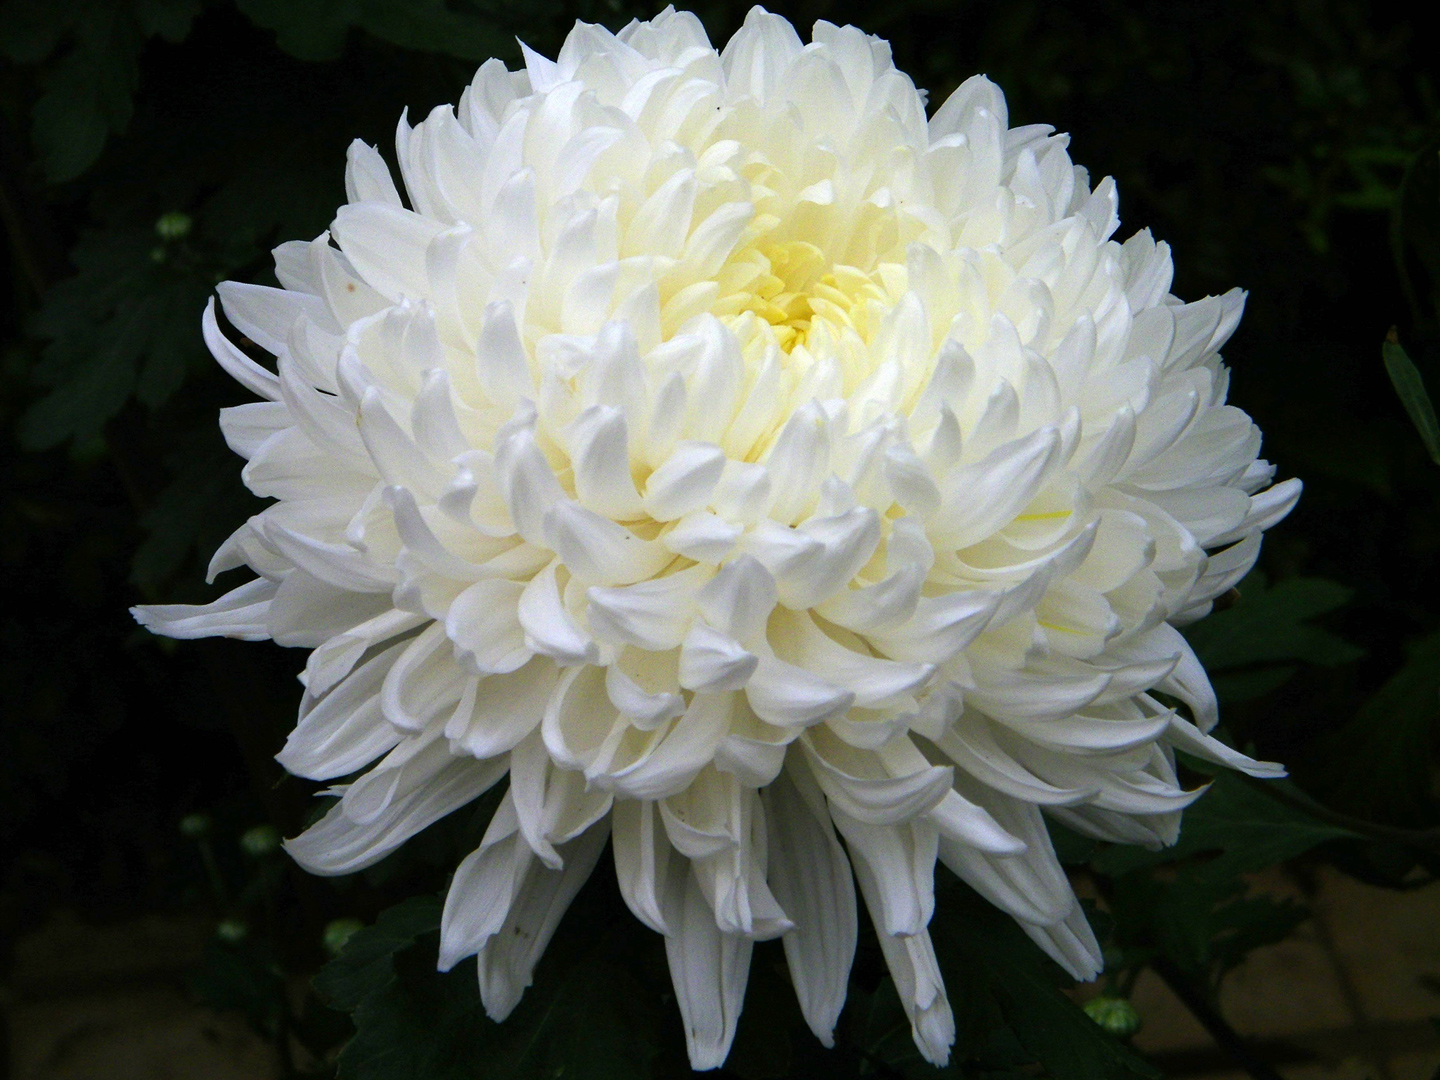 Chrysanthemum flower meaning